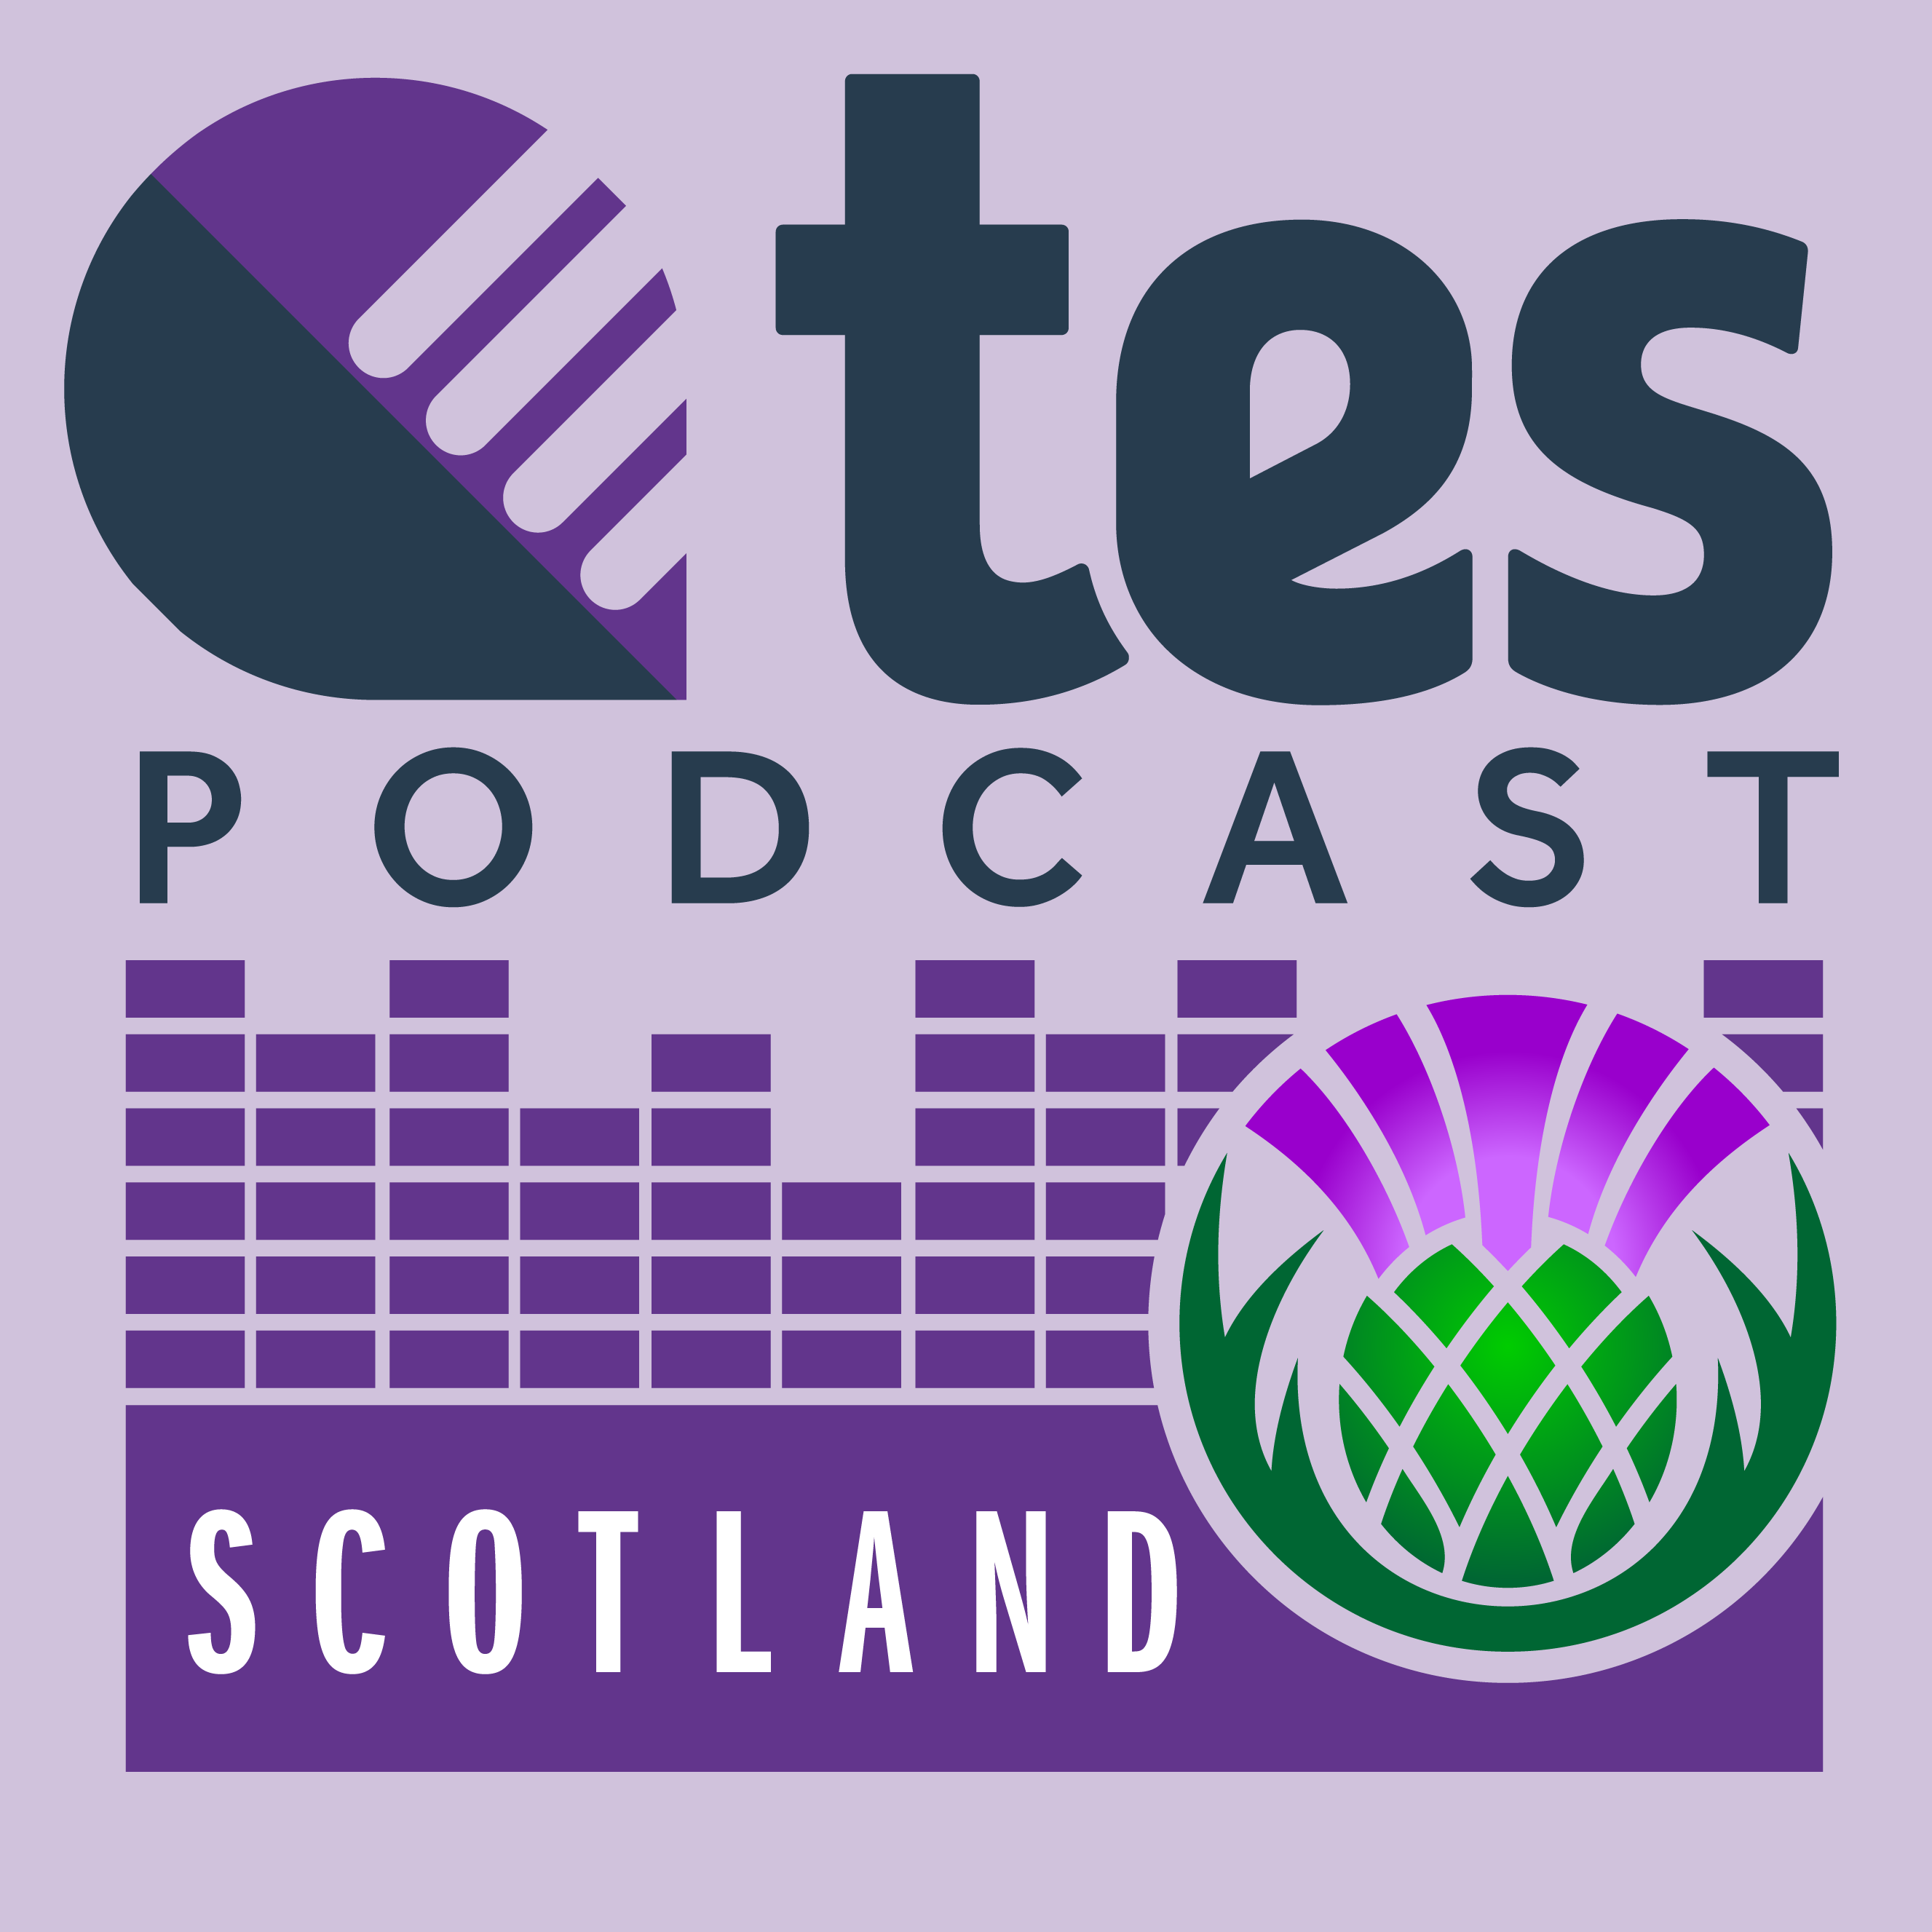 Artwork for podcast Tes Scotland